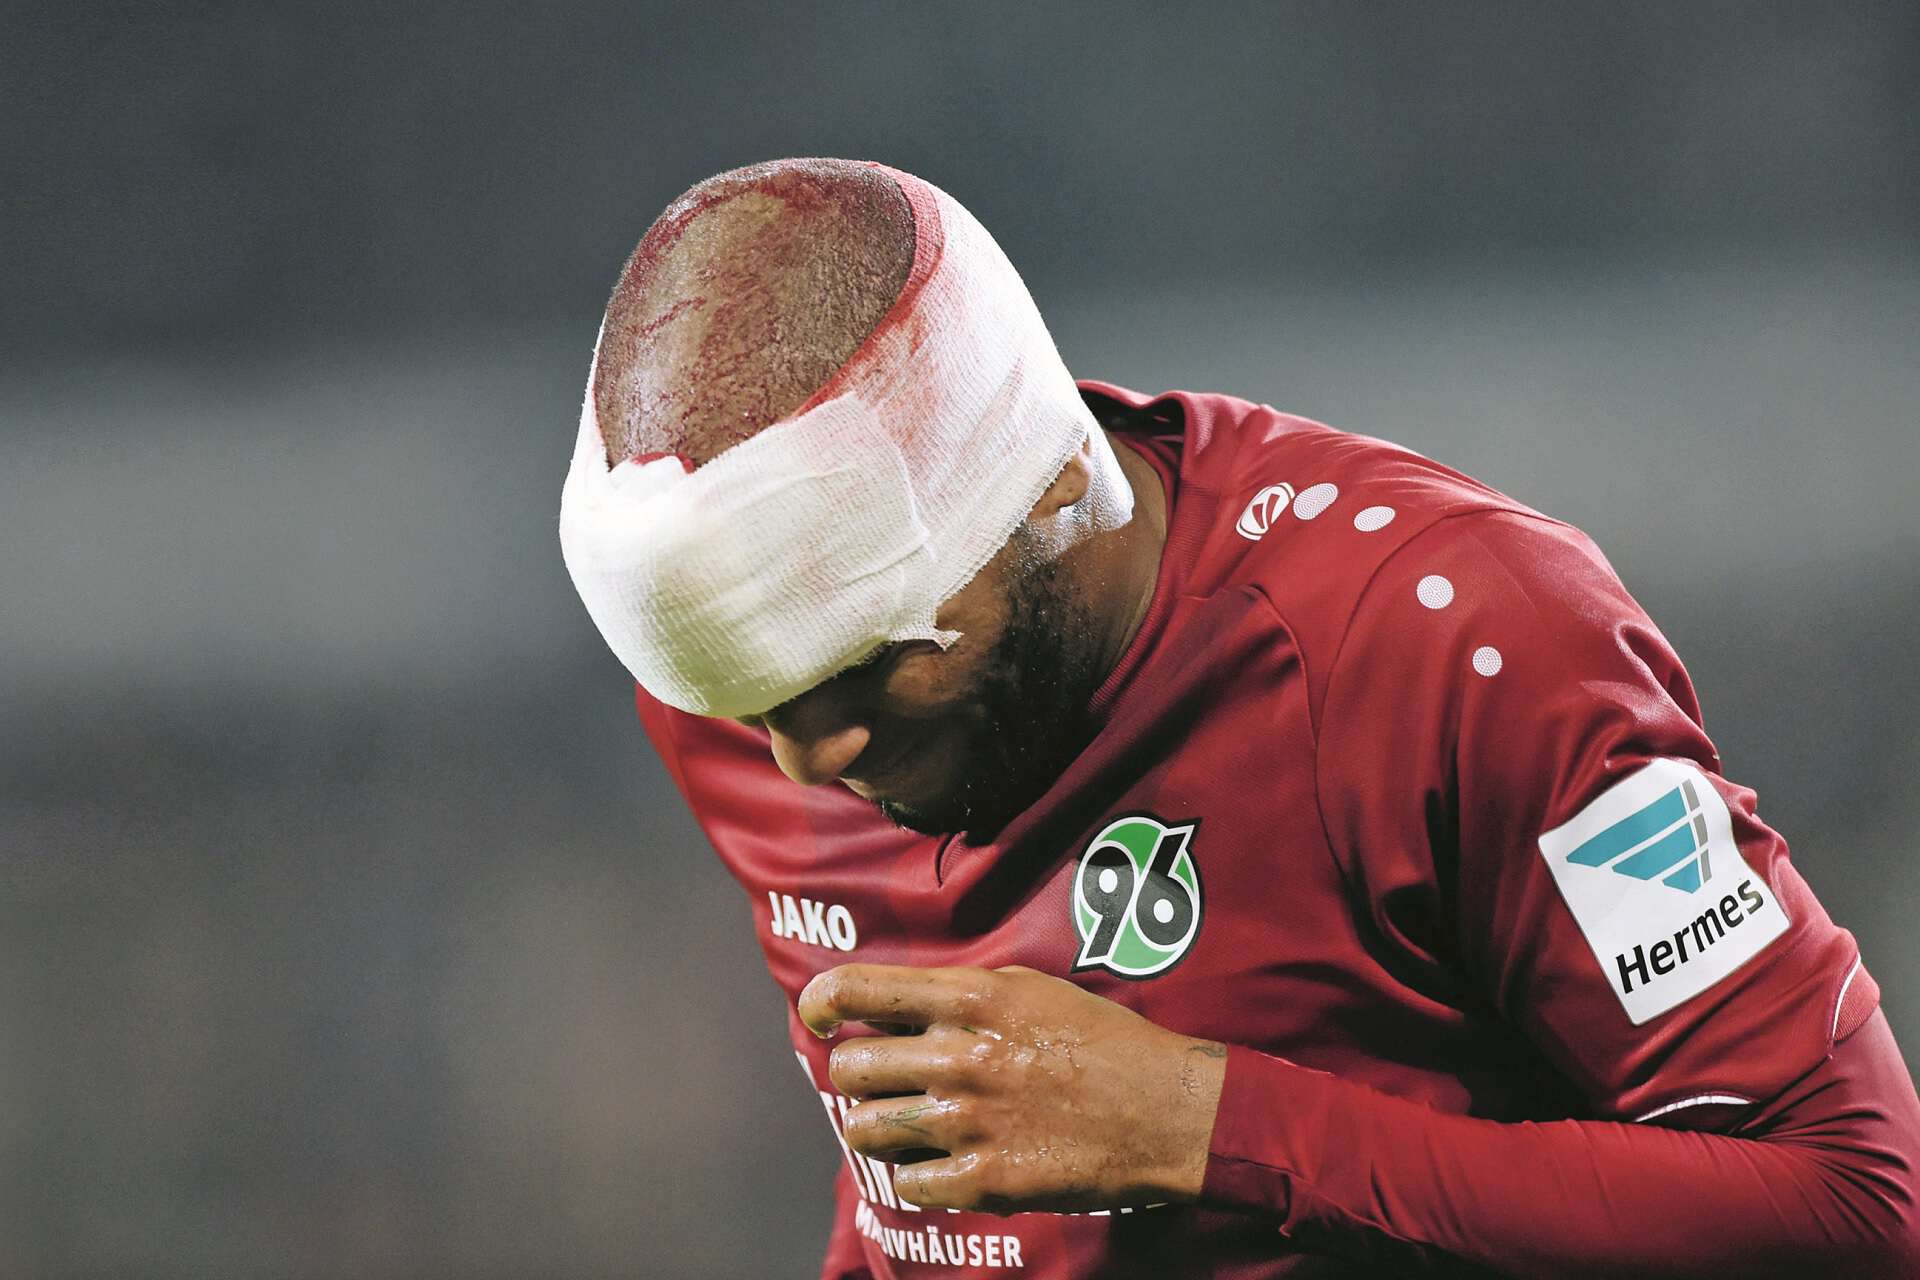 Am Kopf verletzter Fußballspieler mit Verband, Kopfverletzung Jimmy Briand (96) Fussball Bundesliga, Hannover 96 - Eintracht Frankfurt